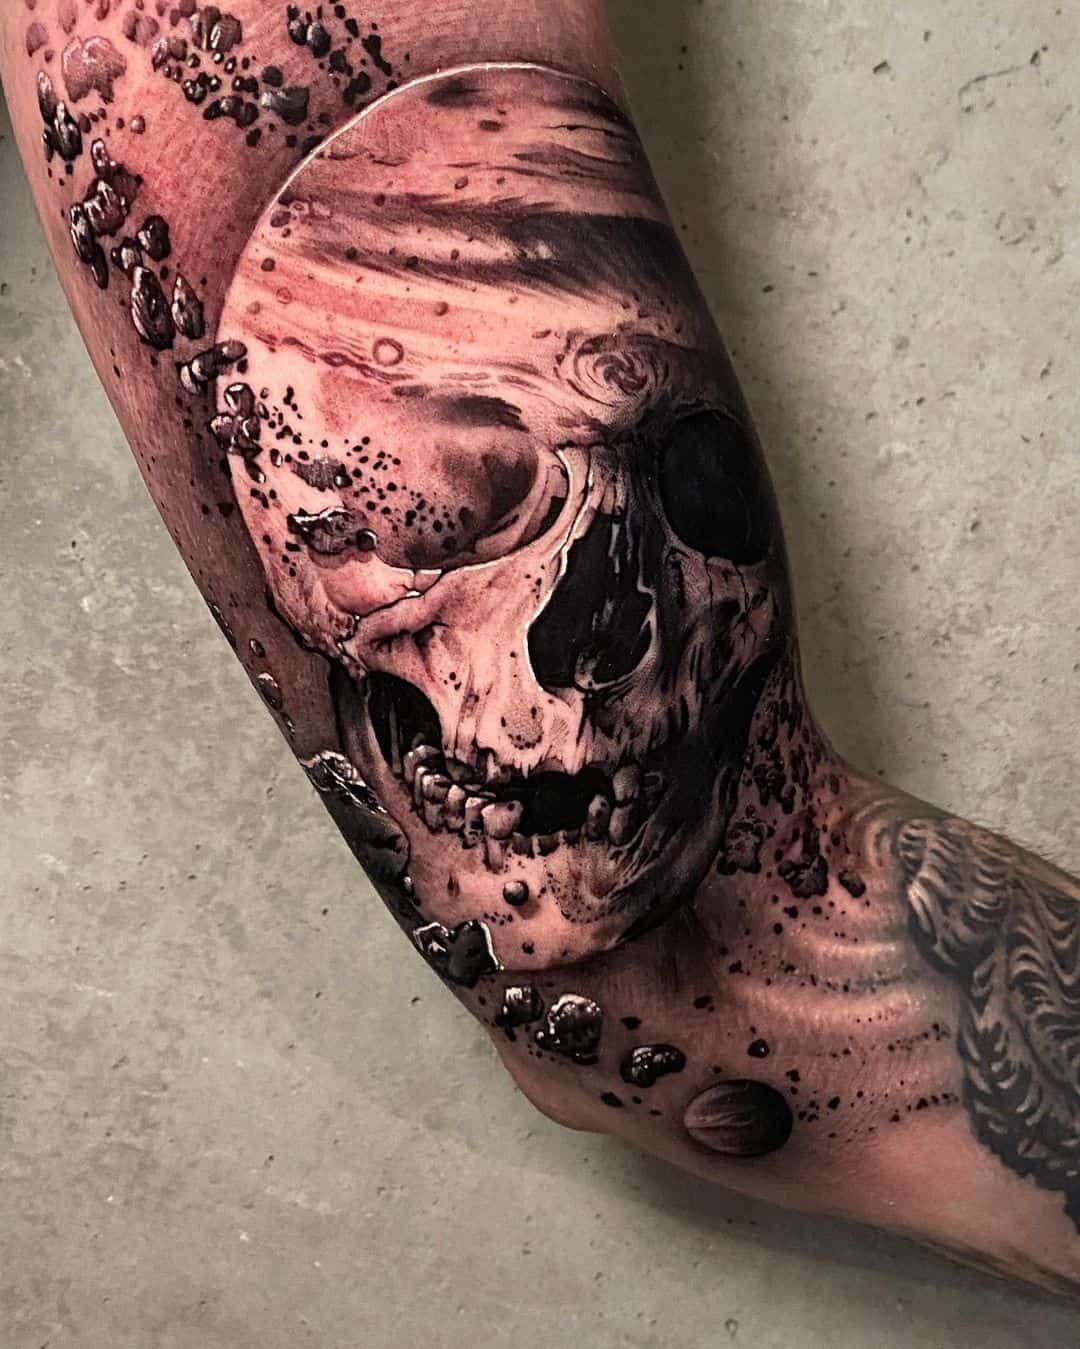 Realistic skull tattoo